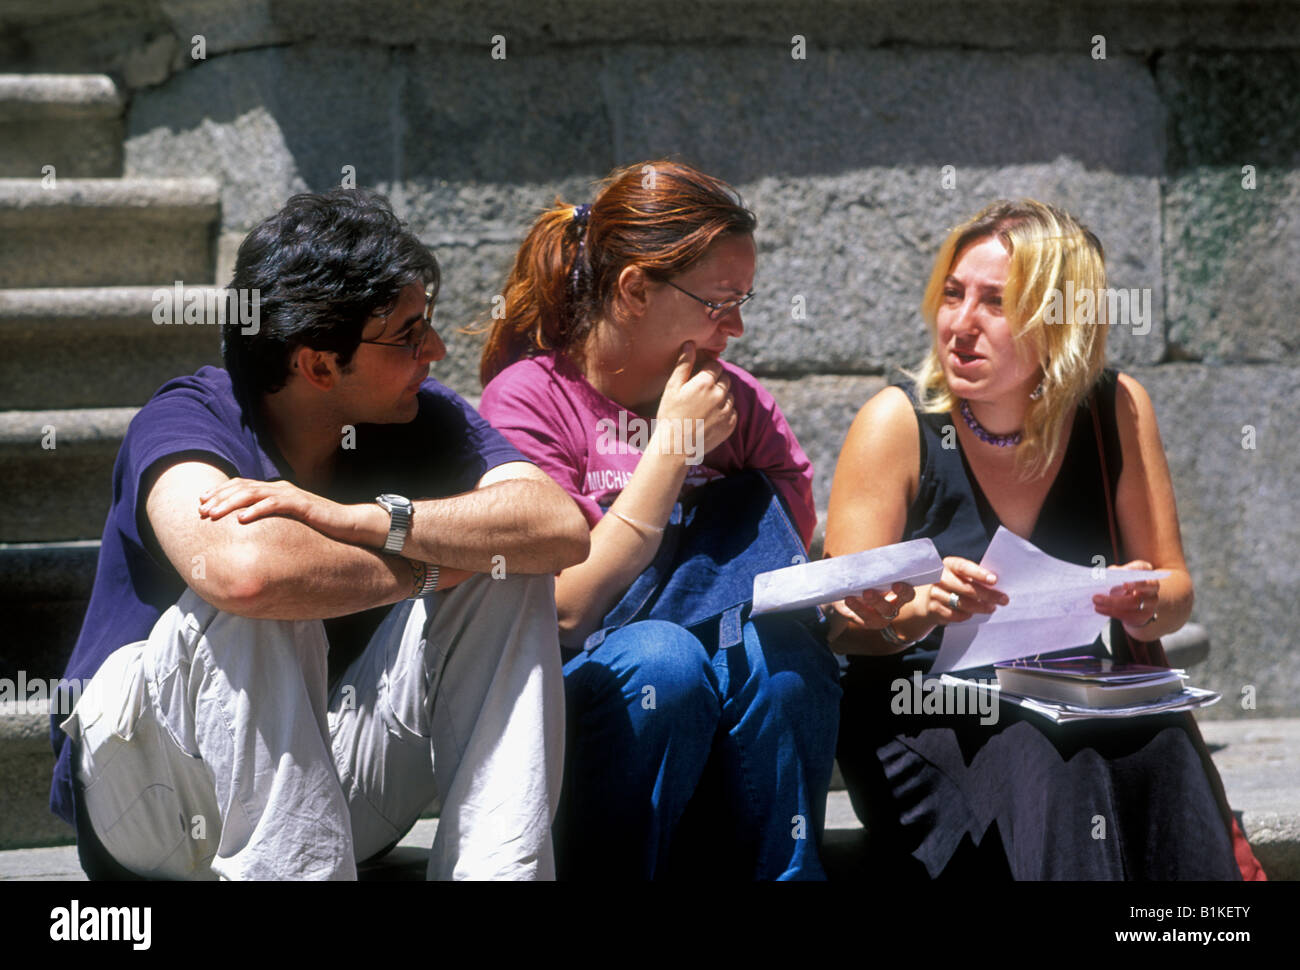 Españoles, estudiantes, hablando, estudiando, Anaya College, Salamanca, provincia de Salamanca, Castilla y León, España, Europa Foto de stock